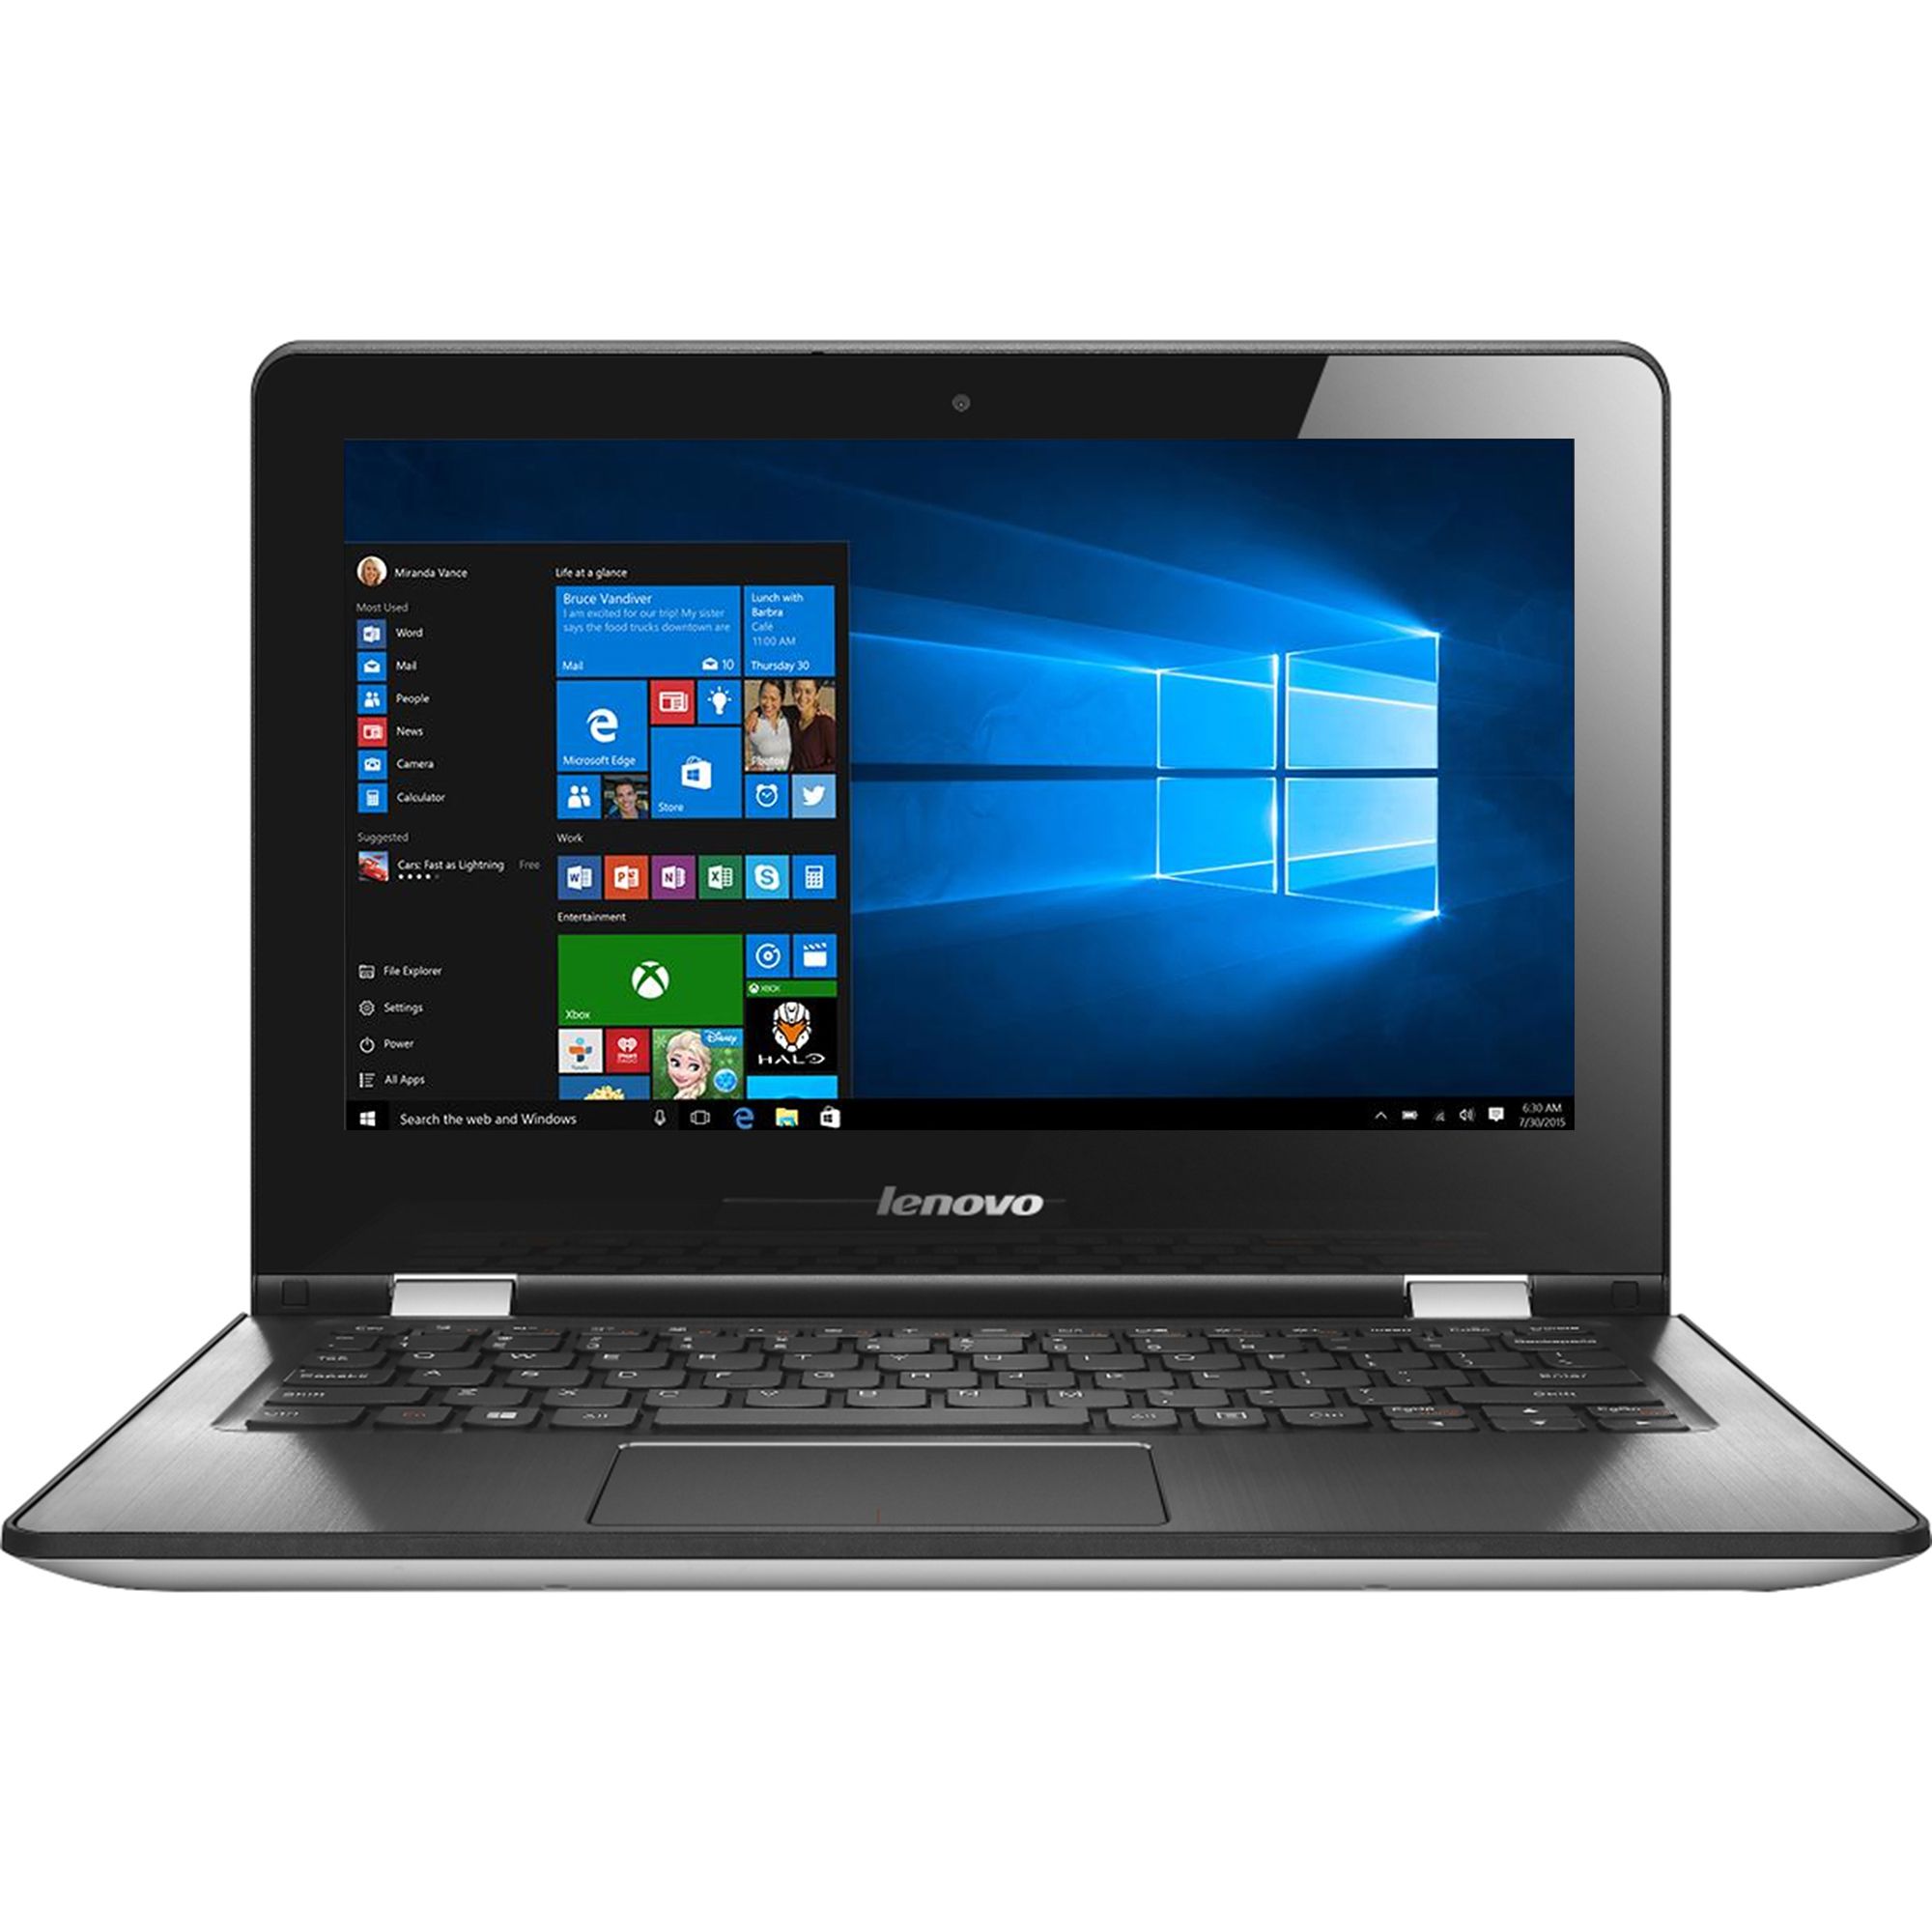 Laptop Lenovo Yoga 300-11IBR, Intel Celeron N3060 1.60GHz, 4GB DDR3, 64GB SSD, 11.6 Inch TouchScreen, Webcam